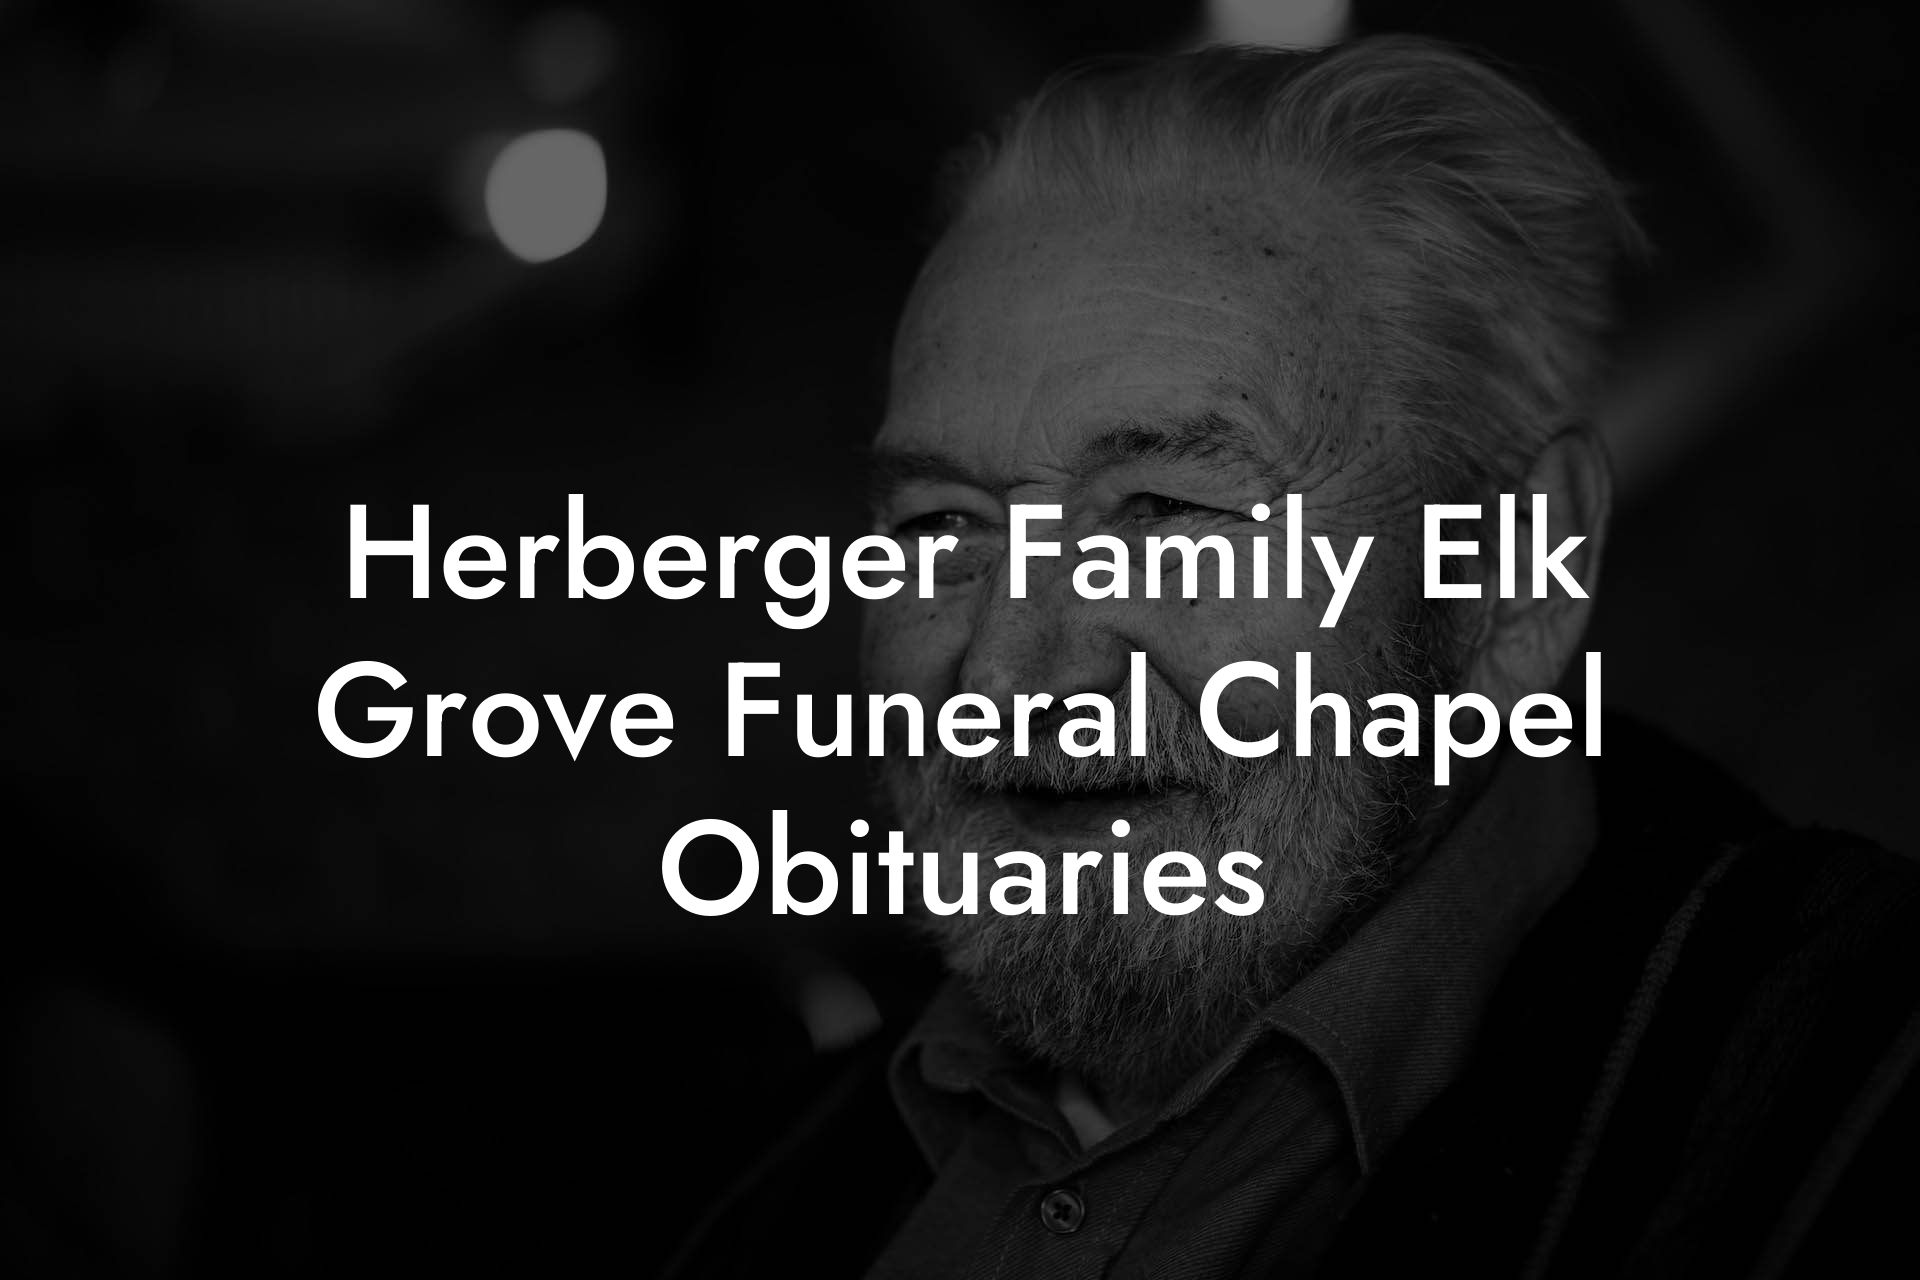 Herberger Family Elk Grove Funeral Chapel Obituaries